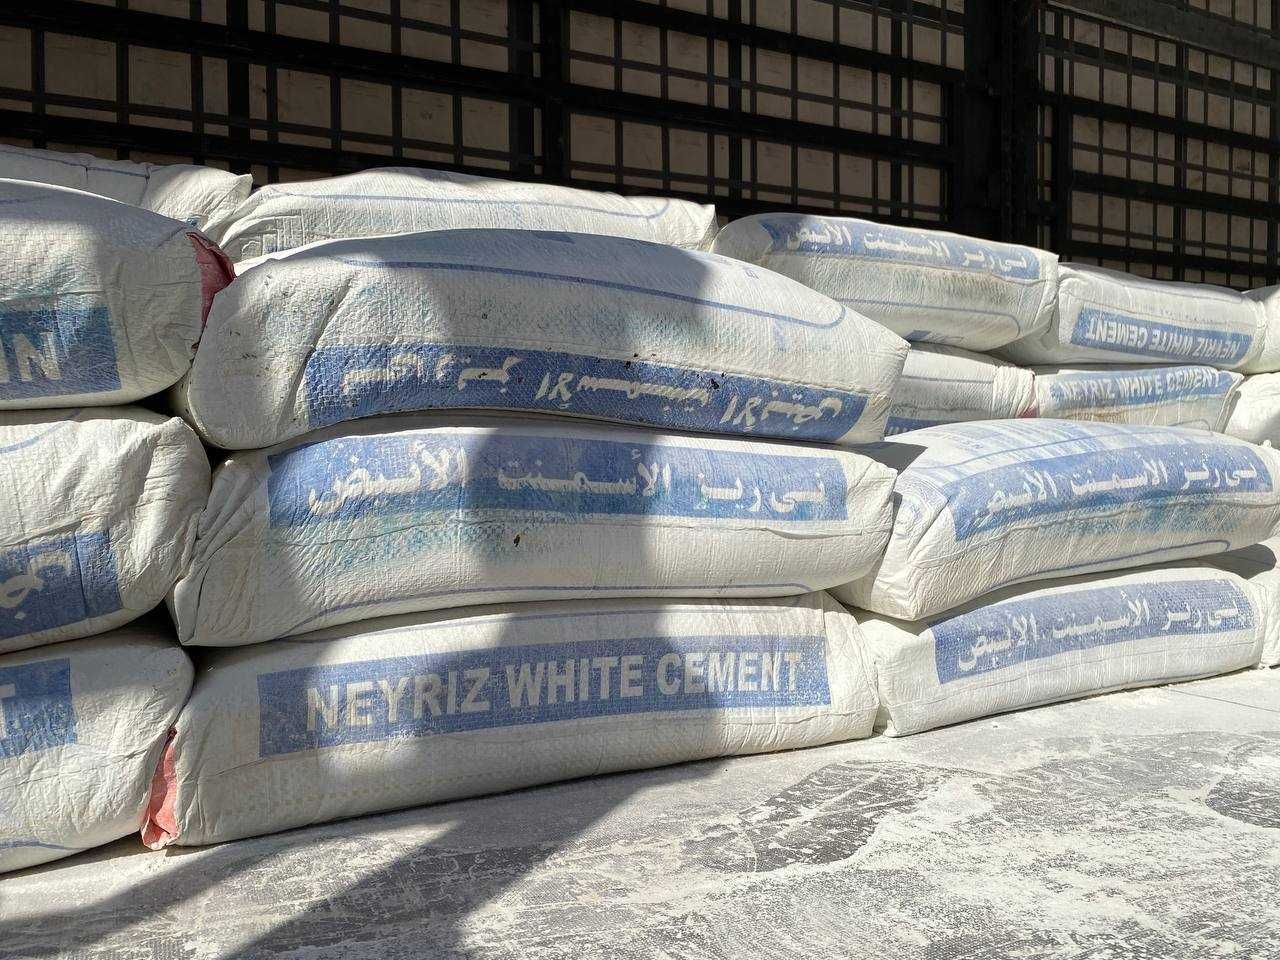 Белый цемент,  oq sement. Иран нейриз, шарг. 3000 сўм